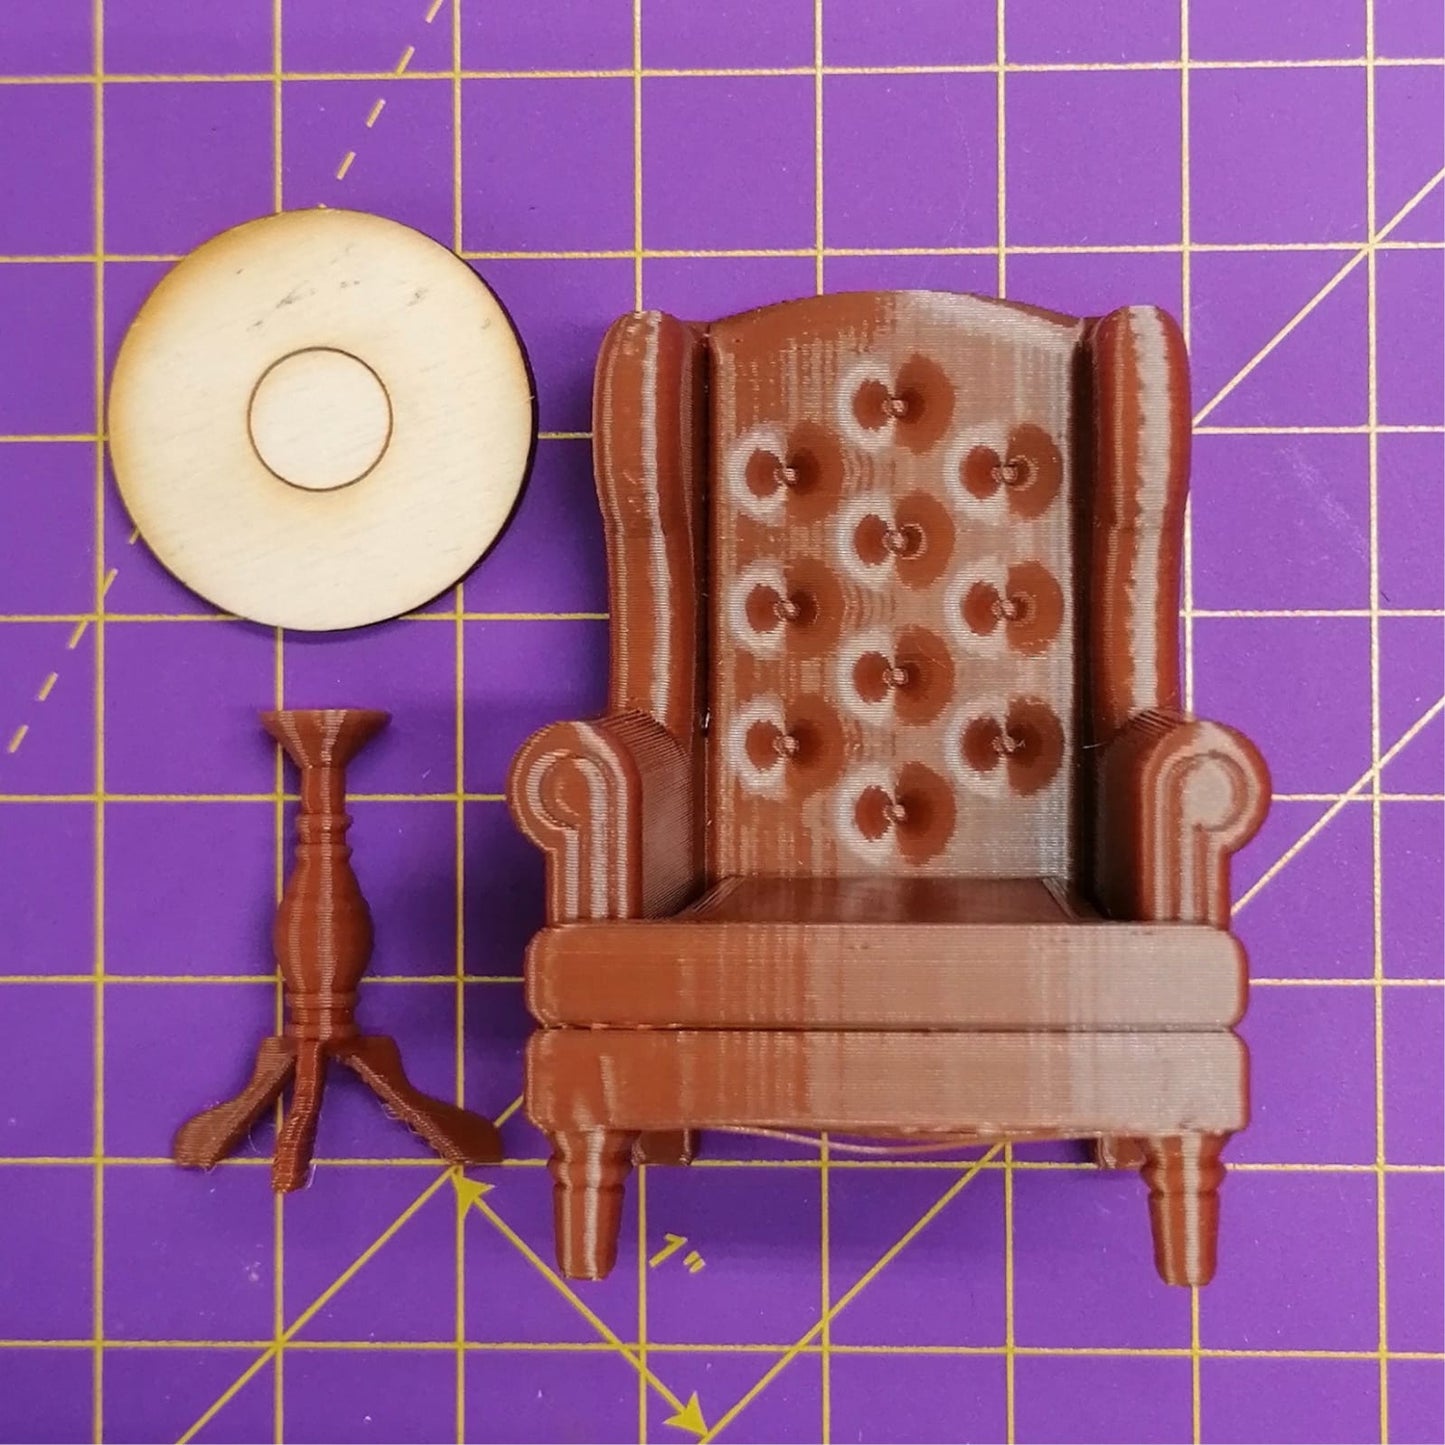 Miniatuur fauteuil en tafel in schaal 1:24